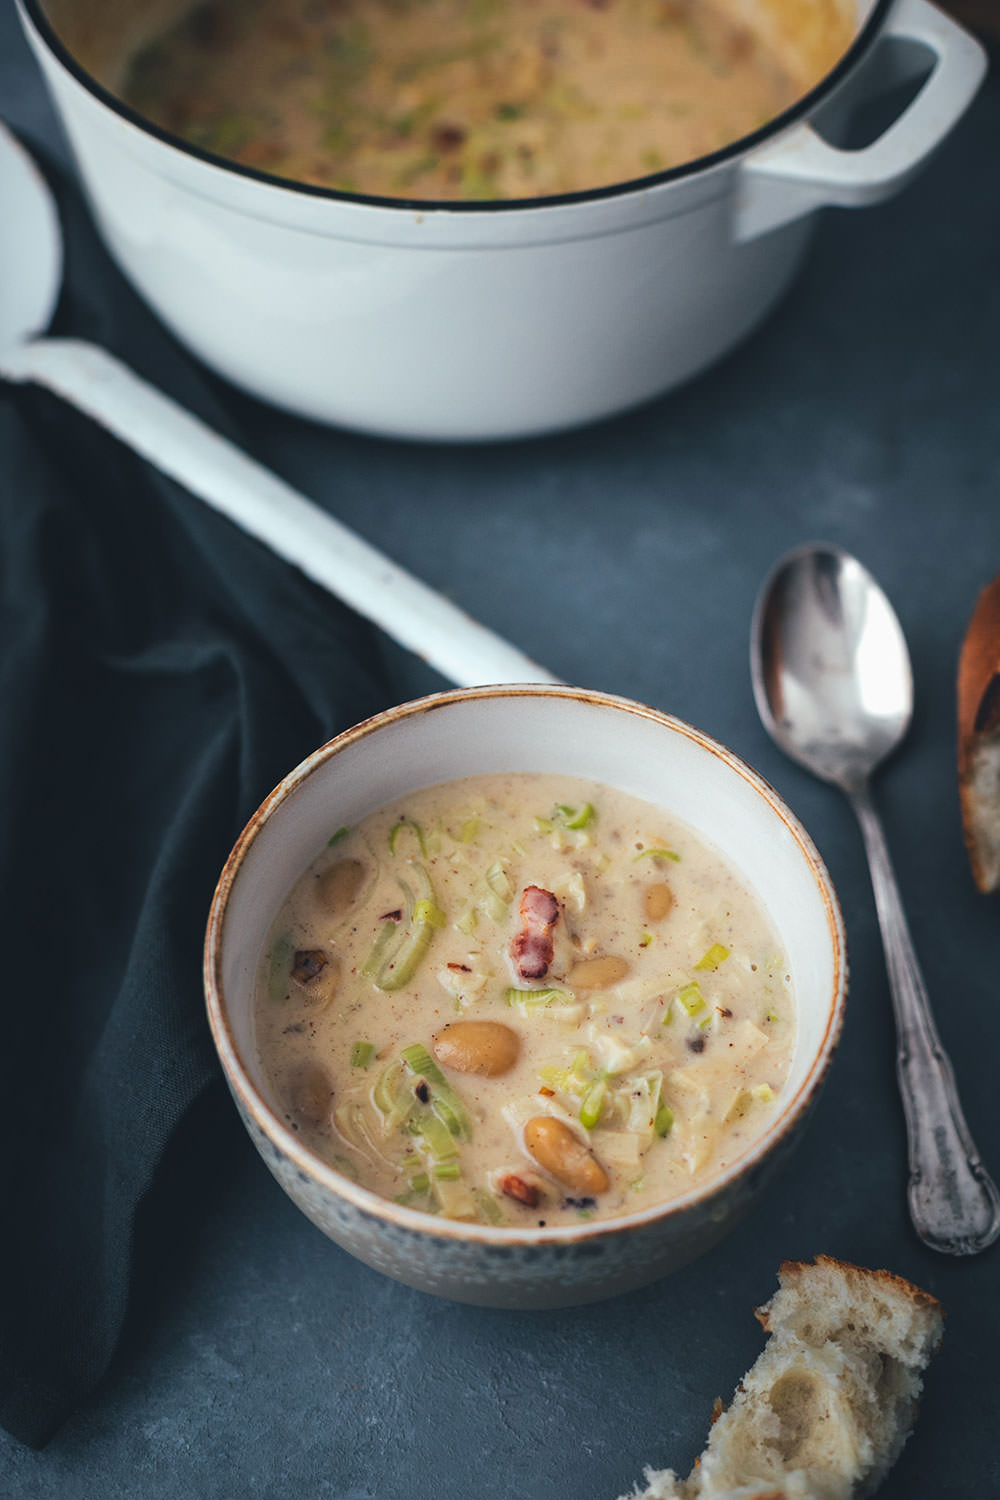 Rezept für cremige Lauch-Suppe mit Speck und weißen Bohnen | moeyskitchen.com #suppe #lauch #porree #lauchsuppe #herbst #herbstküche #saisonal #regional #saisonalschmecktsbesser #foodblog #rezept